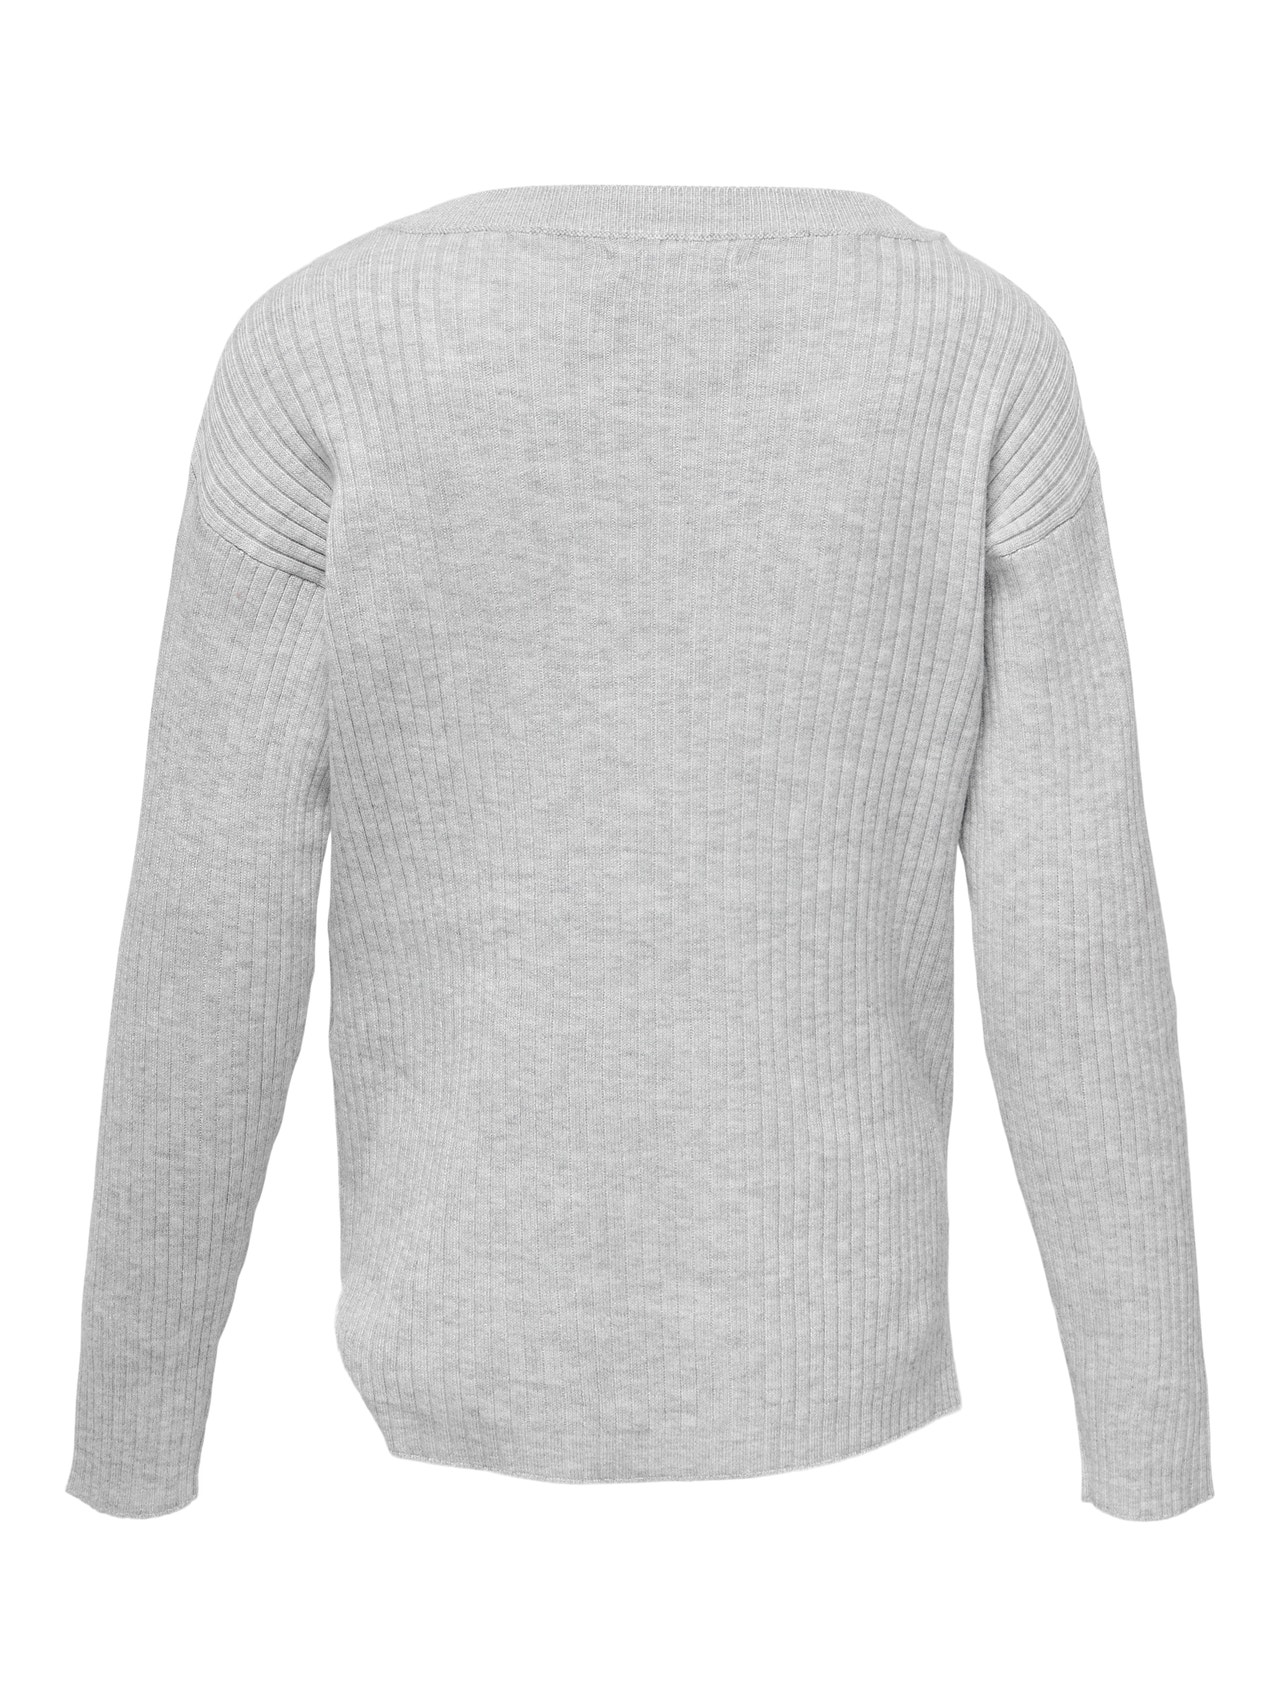 ONLY Regular fit O-hals Pullover -Light Grey Melange - 15263490